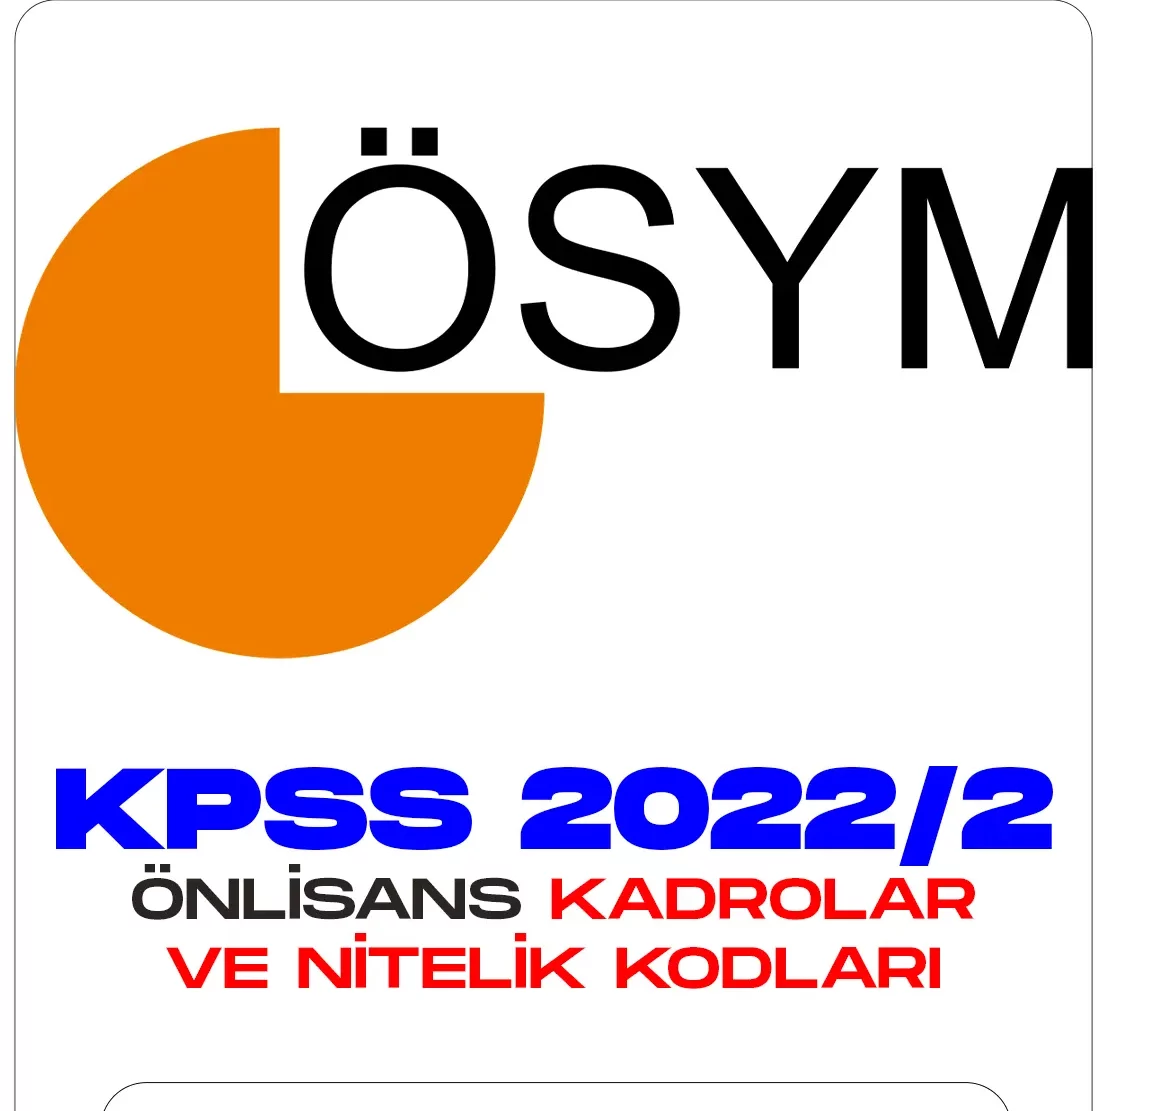 KPSS 2022 2 Tercihlerinde Ön Lisans Kadroları